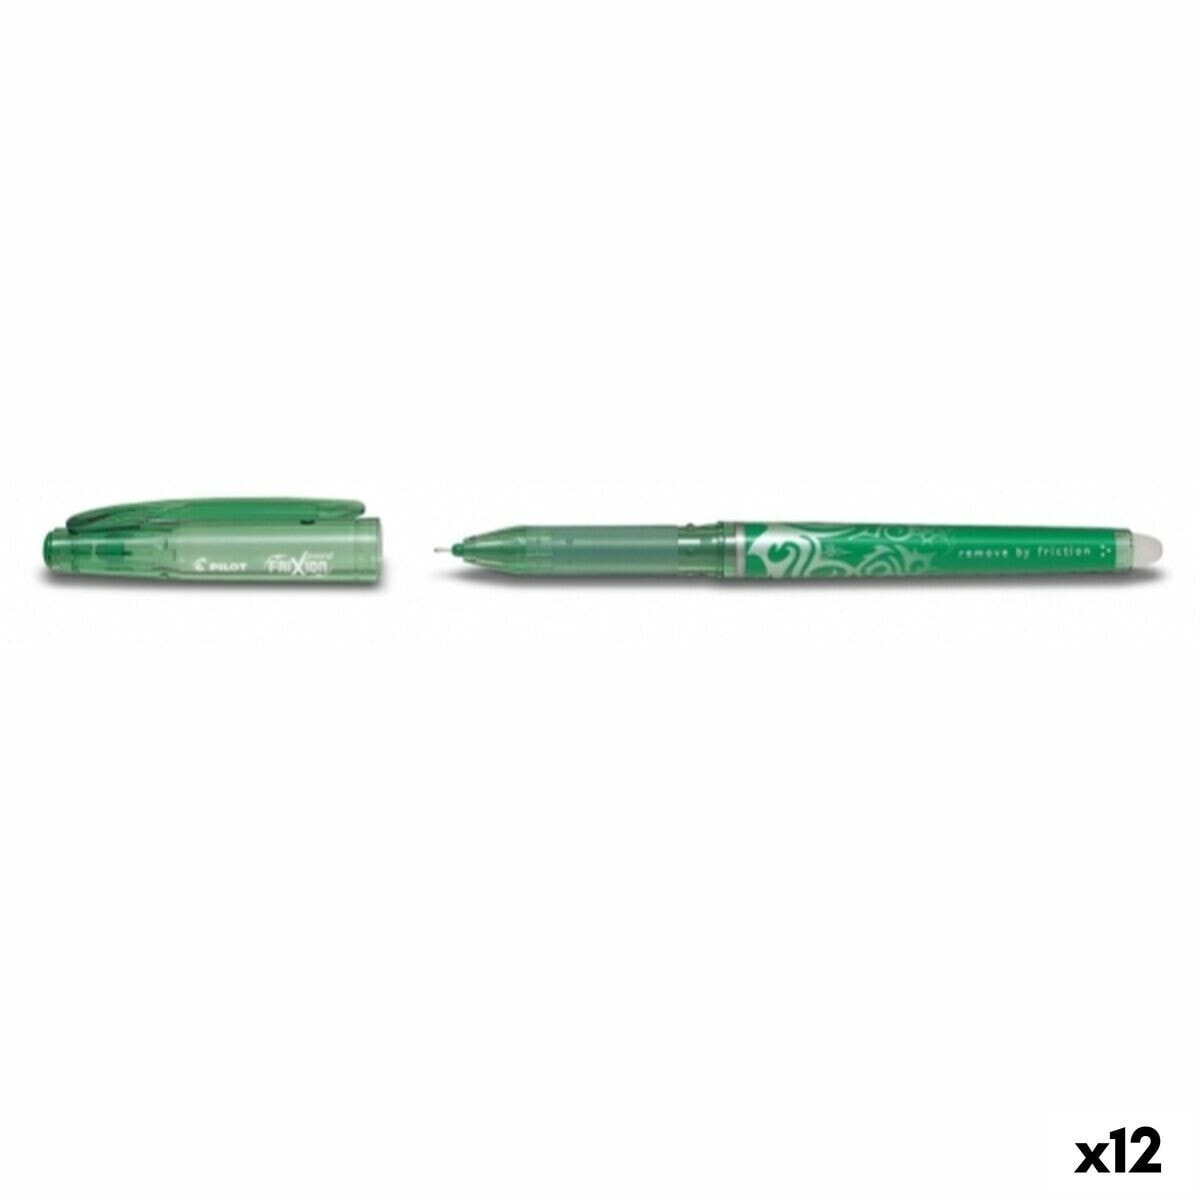 Liquid ink pen Pilot Friction Green (12 Units)